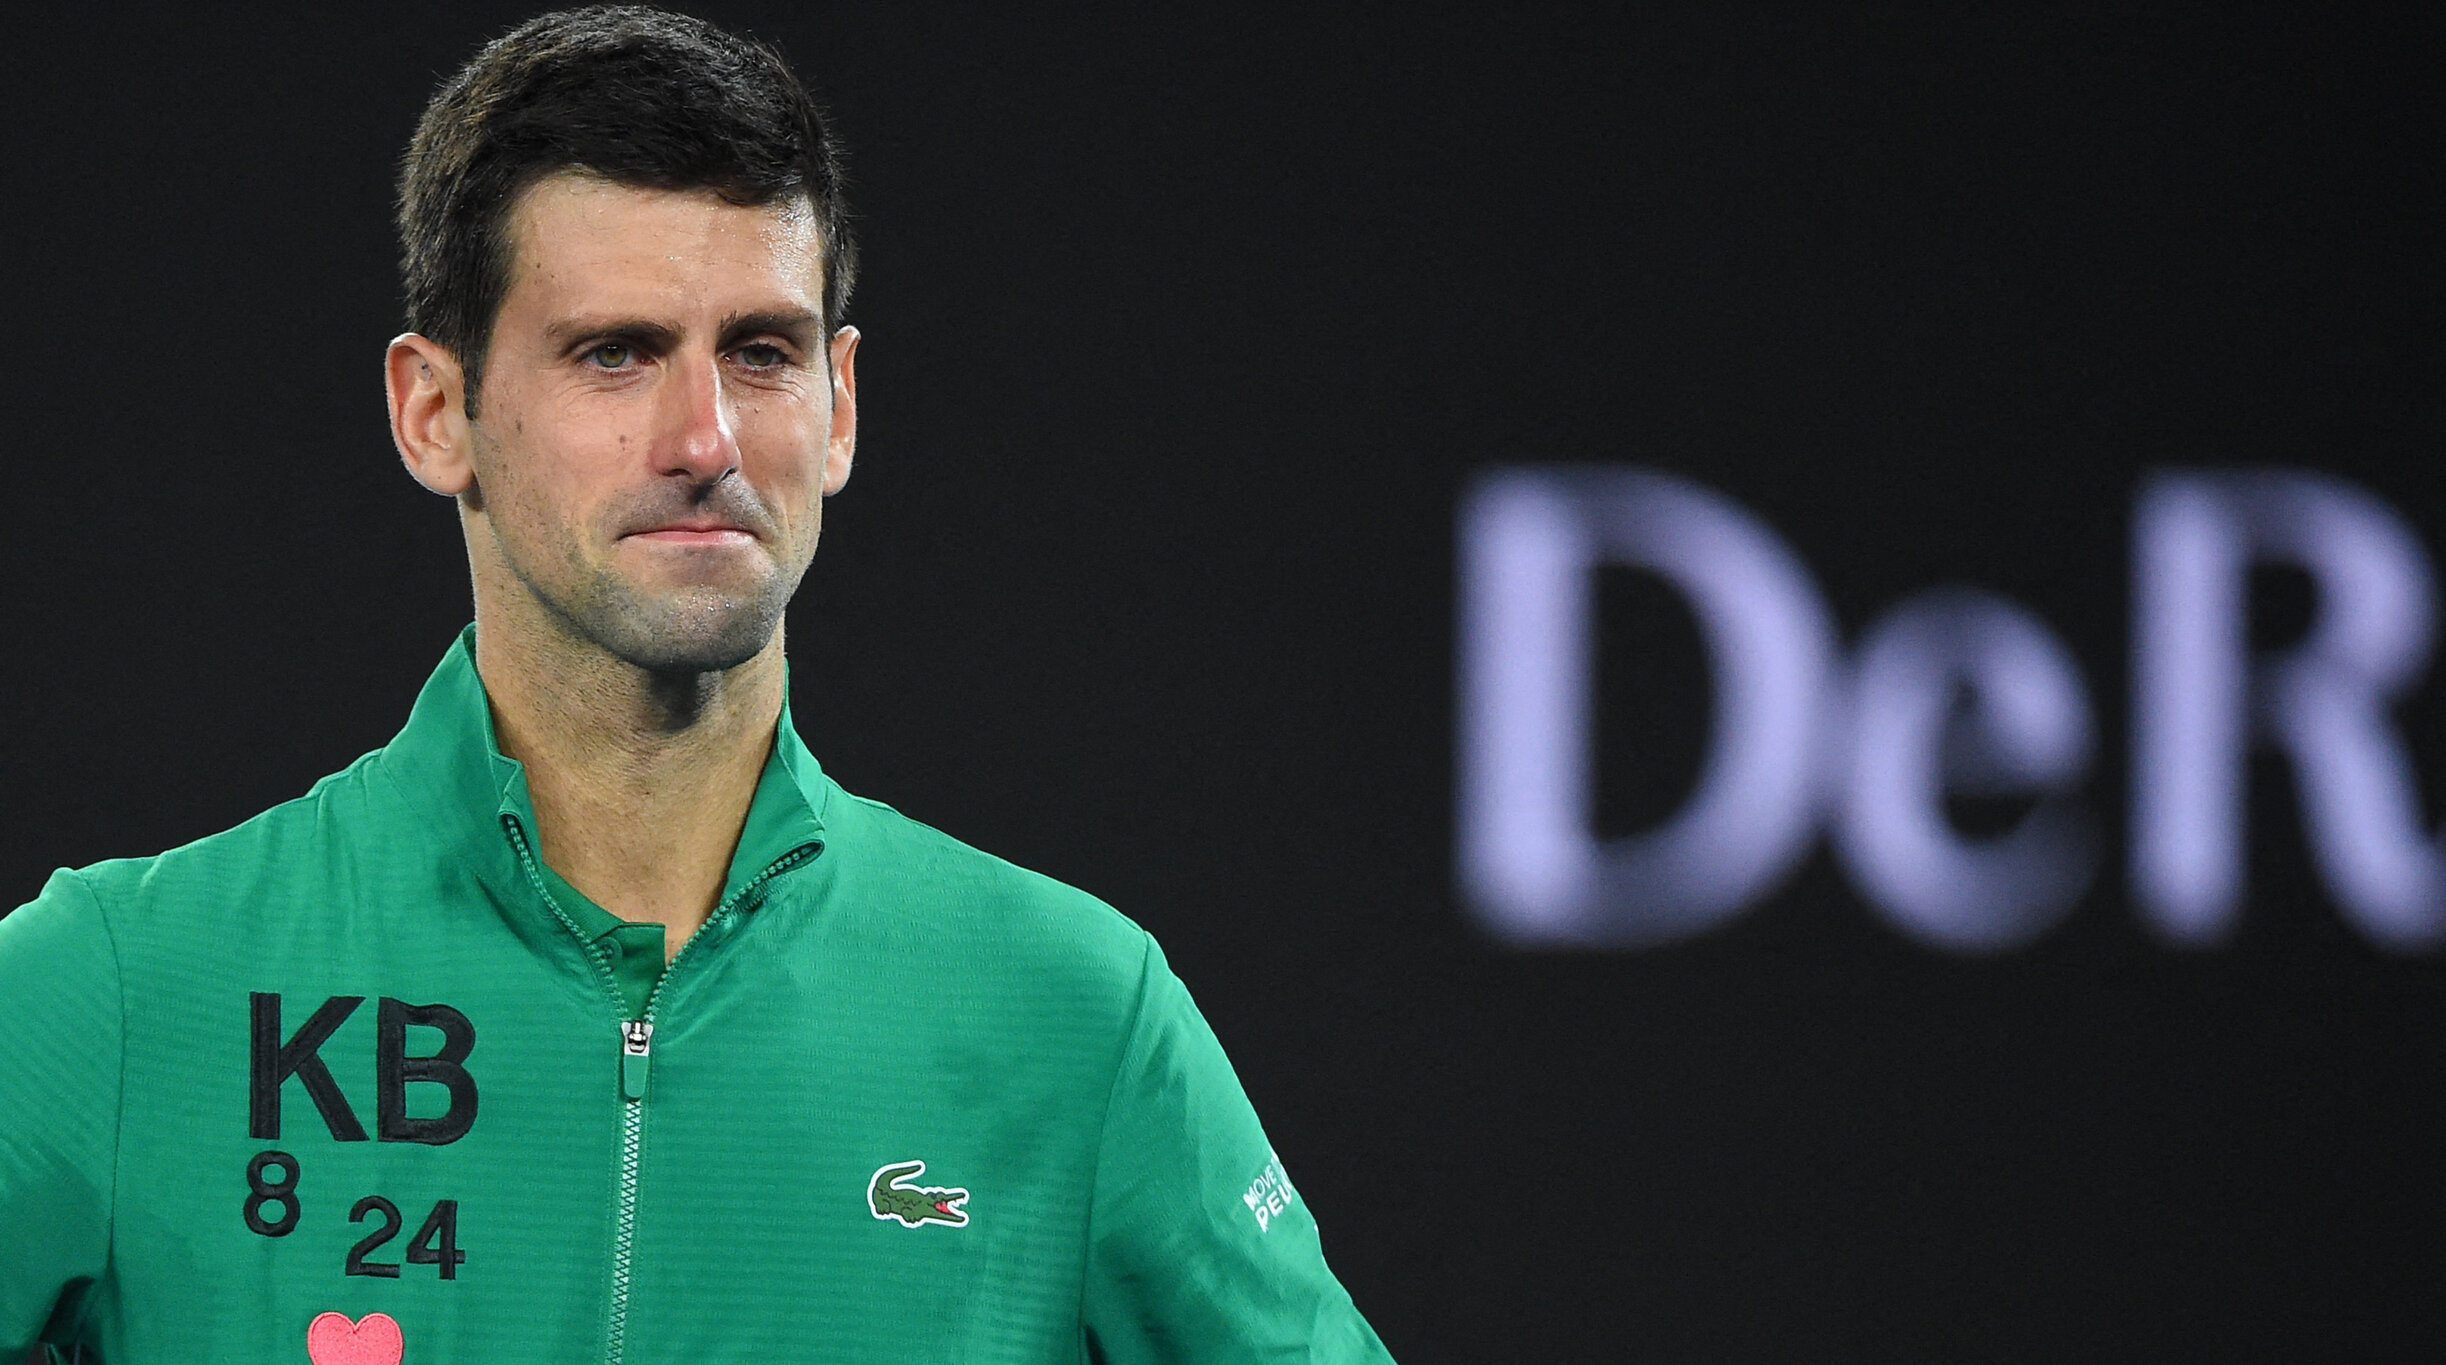 De ce a fost respinsă viza lui Novak Djokovic pentru Australia